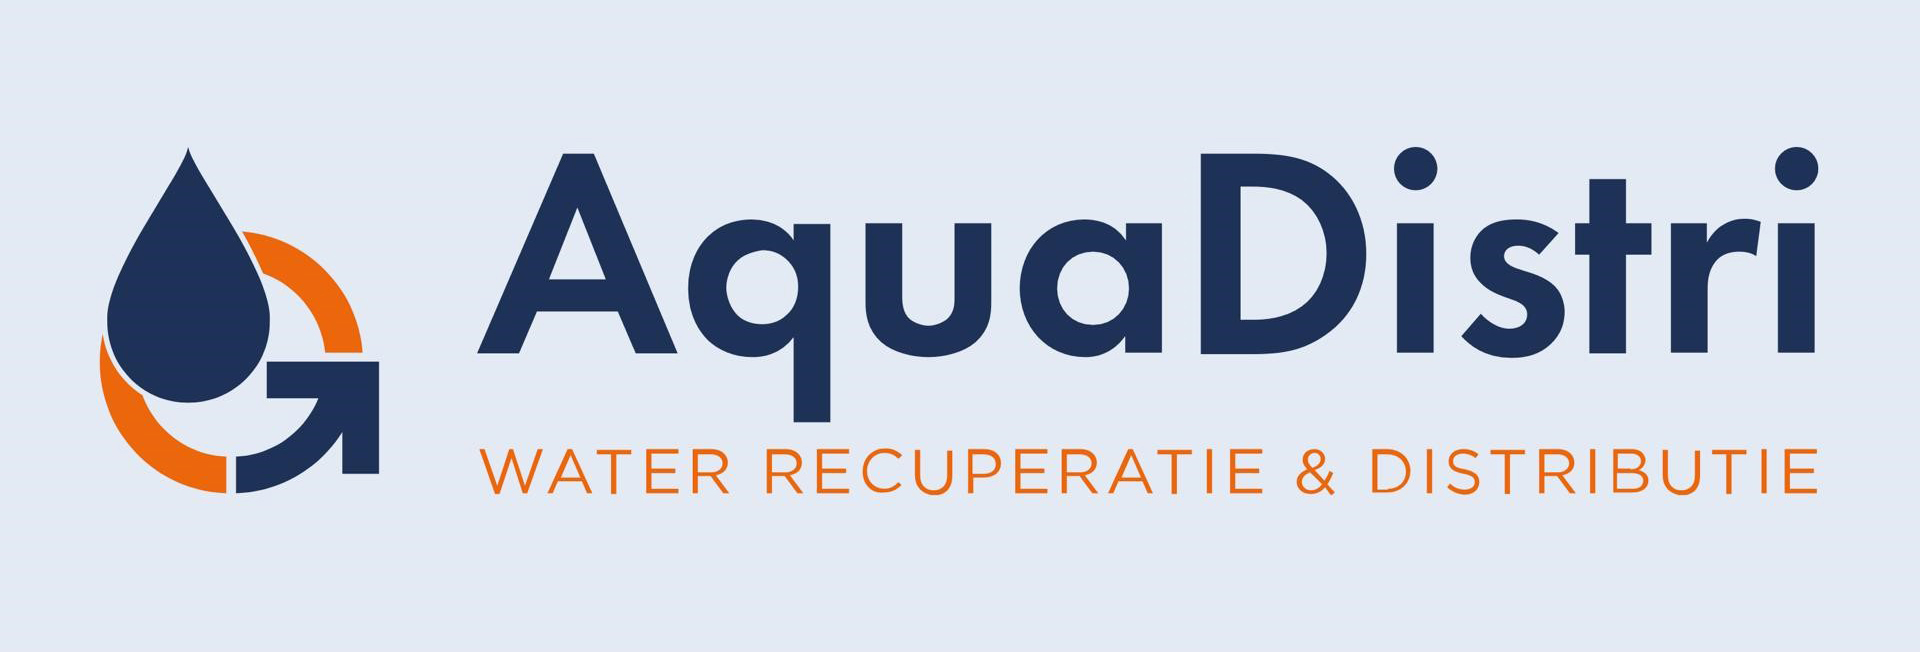 Aquadistri